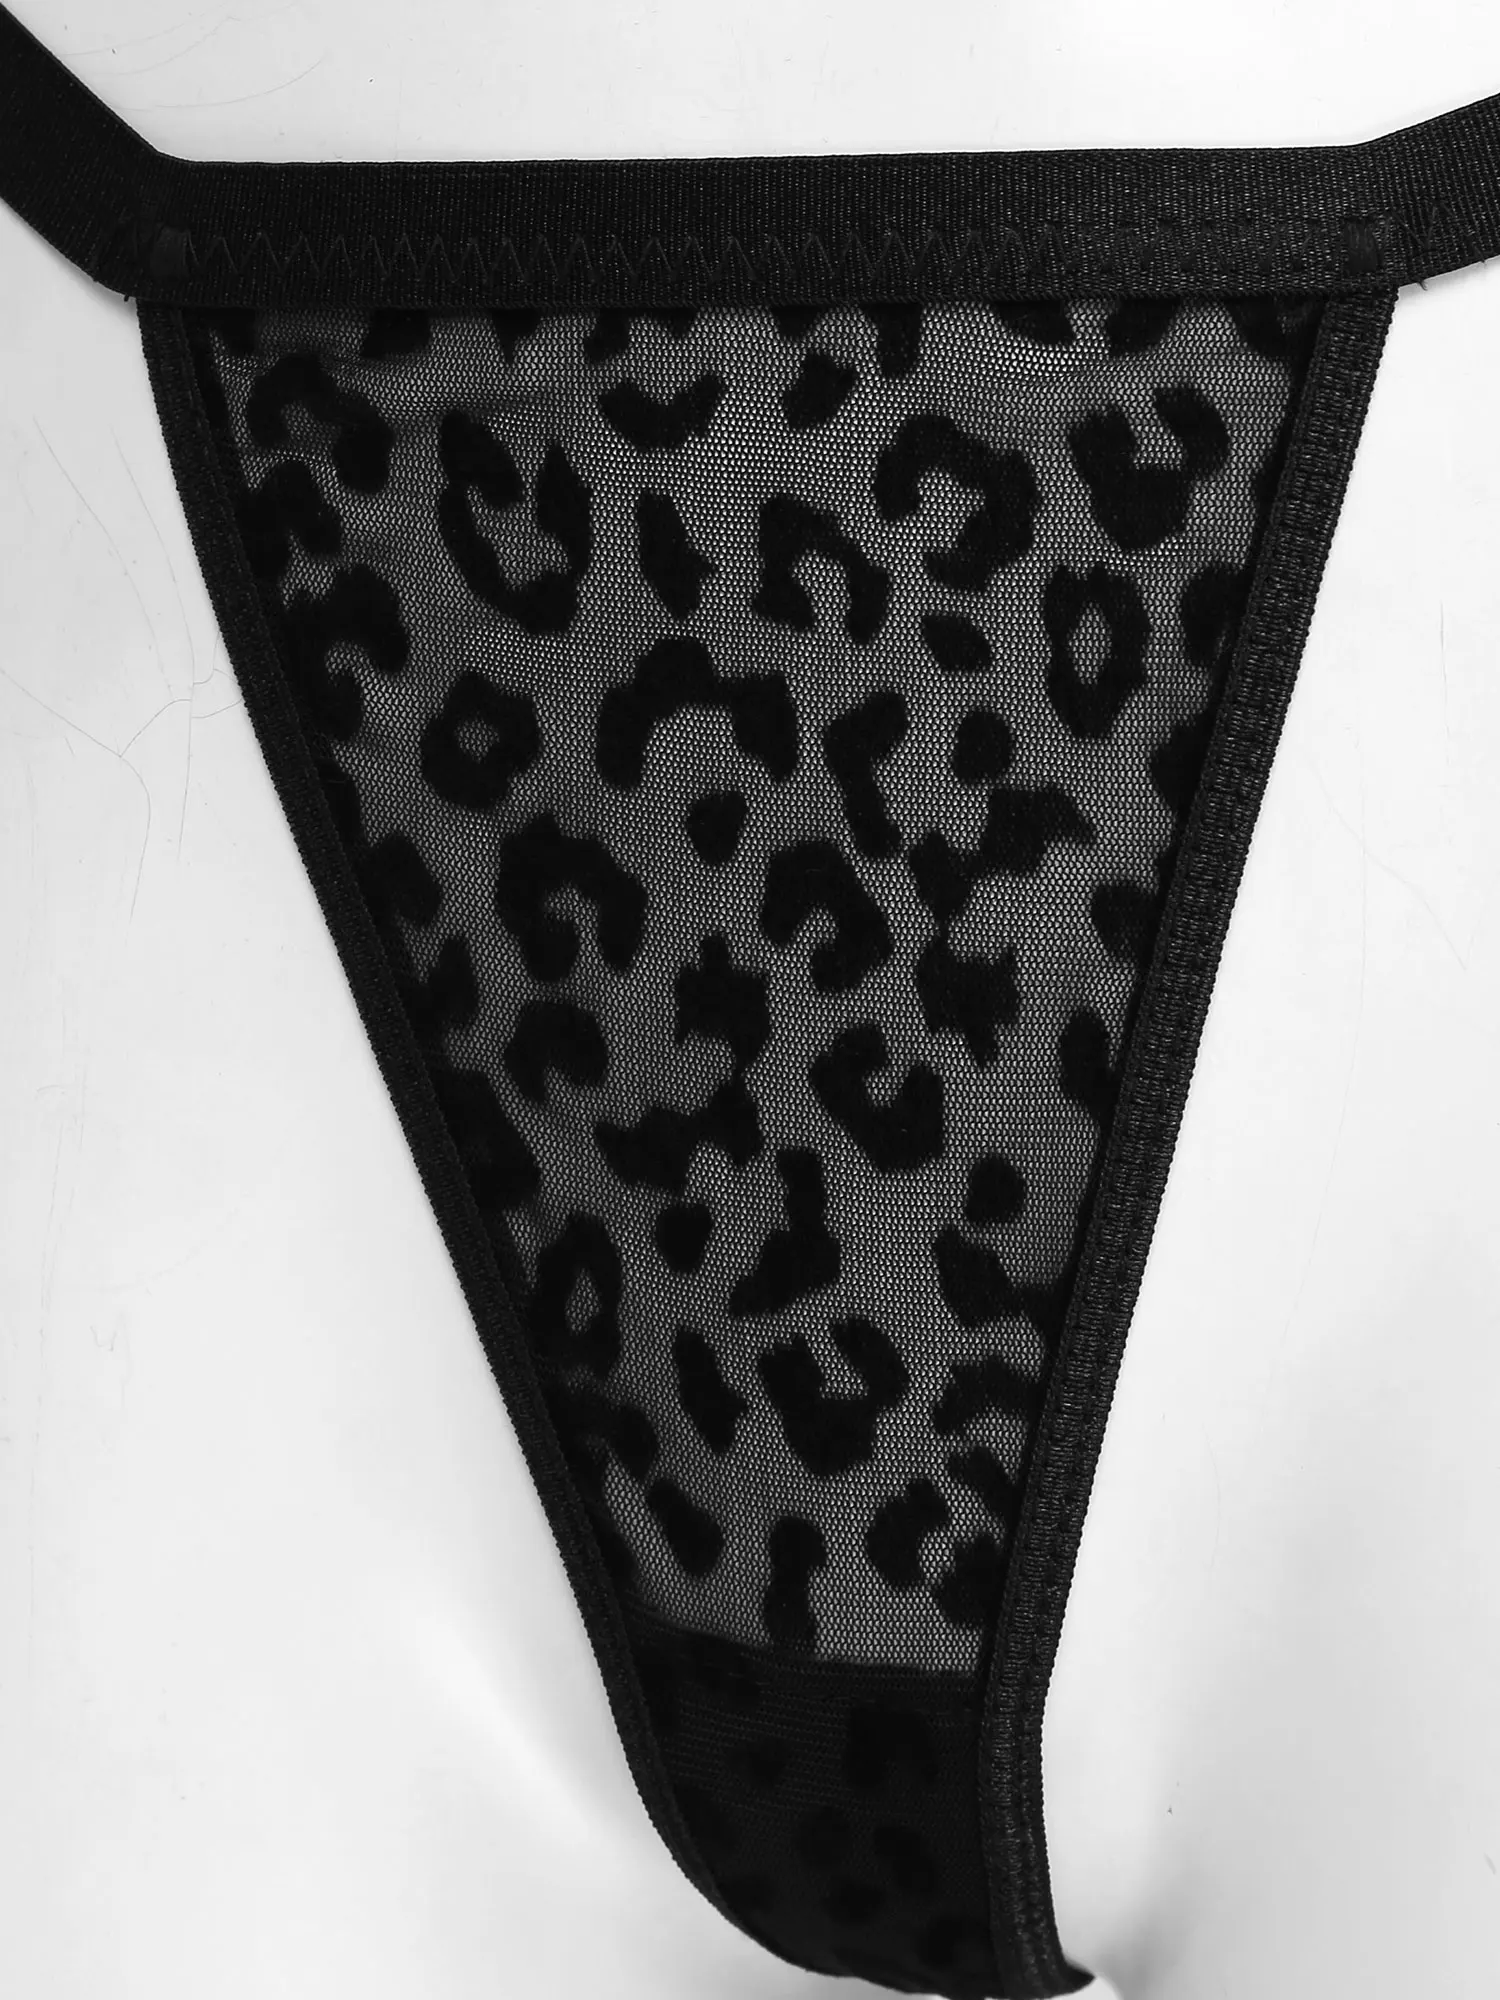 Iiniim Dámské Ladies Leopard Exotické spodní Prádlo Soupravy Clubwear Viz-Prostřednictvím vydlabat Síťované spodní Prádlo, Podprsenka s T-Back Kalhotky Kalhotky 3